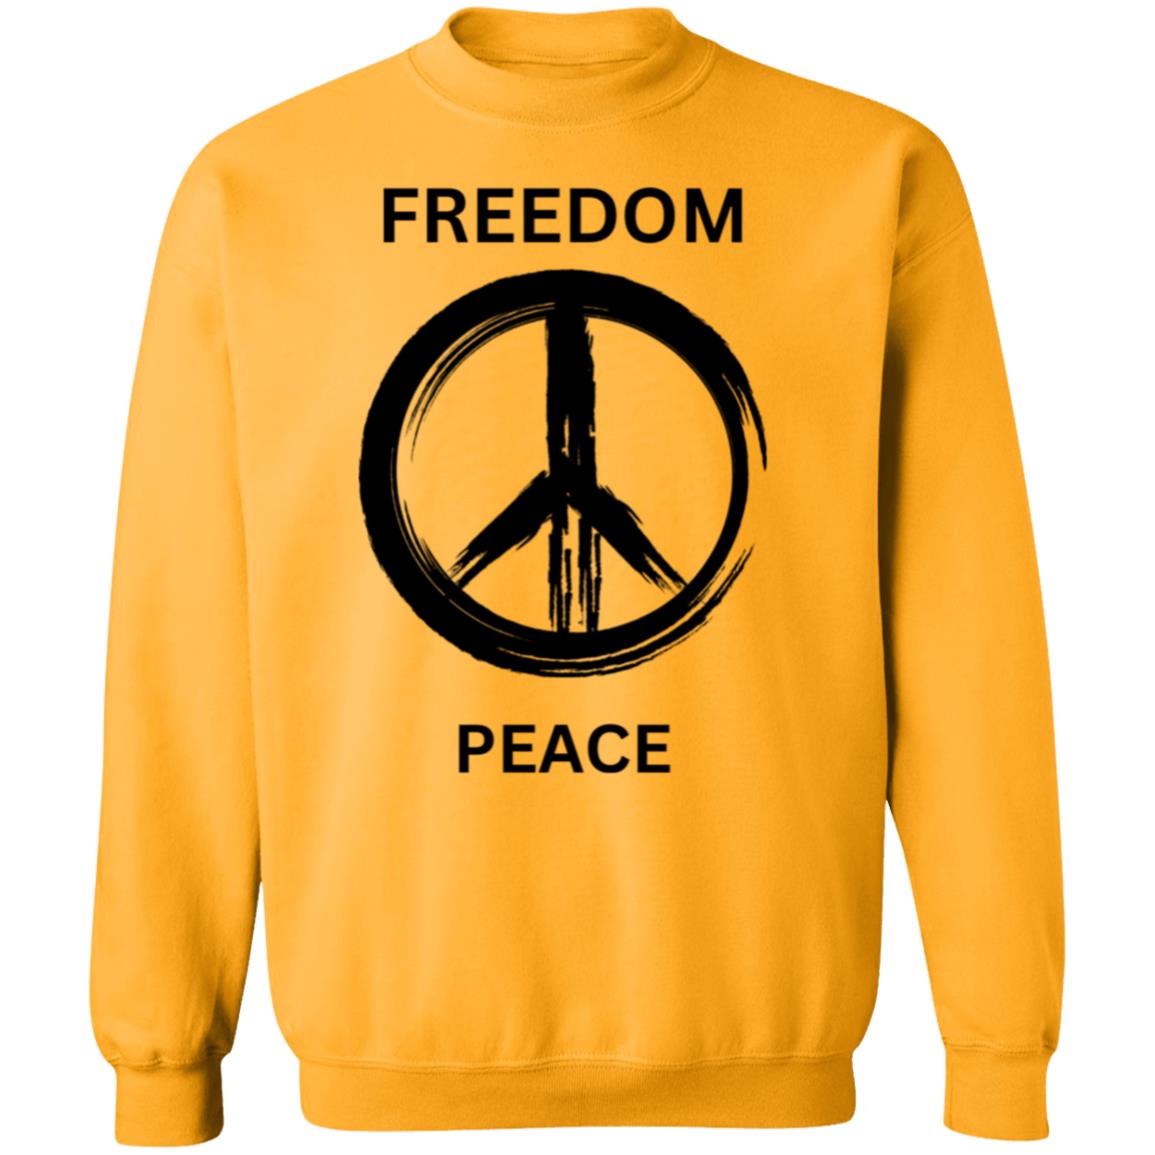 Freedom & Peace